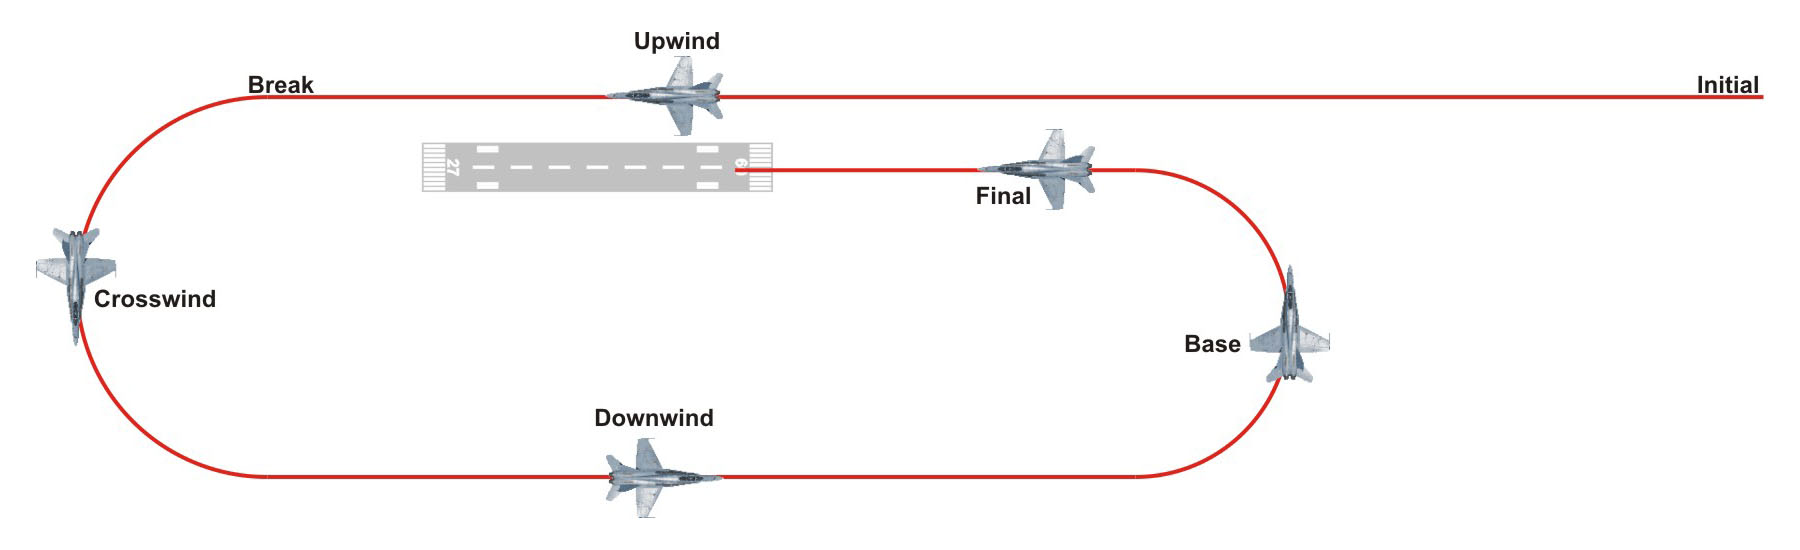 Auf Kurz- und Mittelstreckenflügen: Eurowings rationiert Spucktüten -  aeroTELEGRAPH